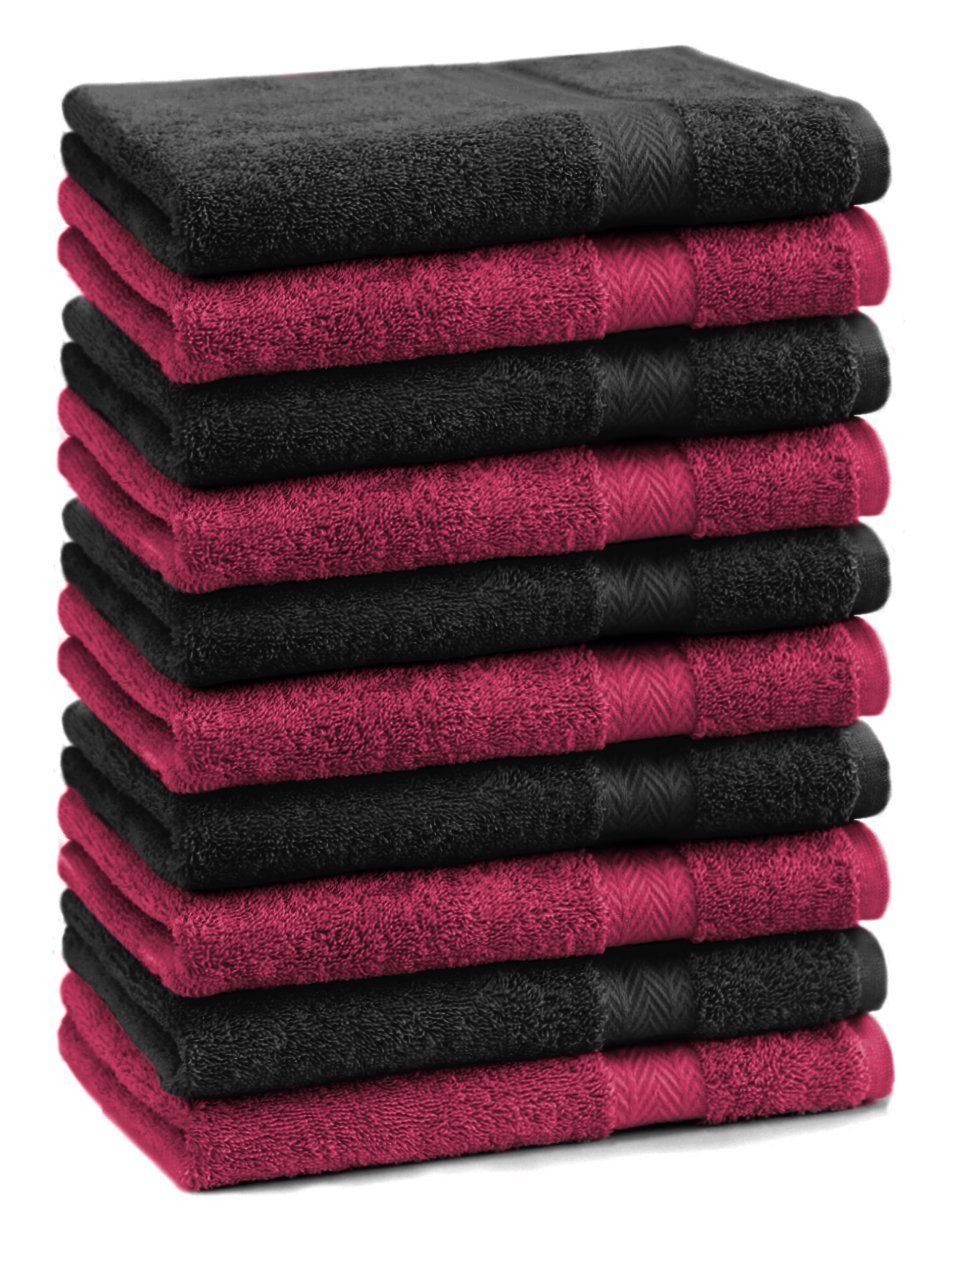 Betz Gästehandtücher 10 Stück Gästehandtücher Premium 100% Baumwolle Gästetuch-Set 30x50 cm Farbe dunkelrot und schwarz, 100% Baumwolle